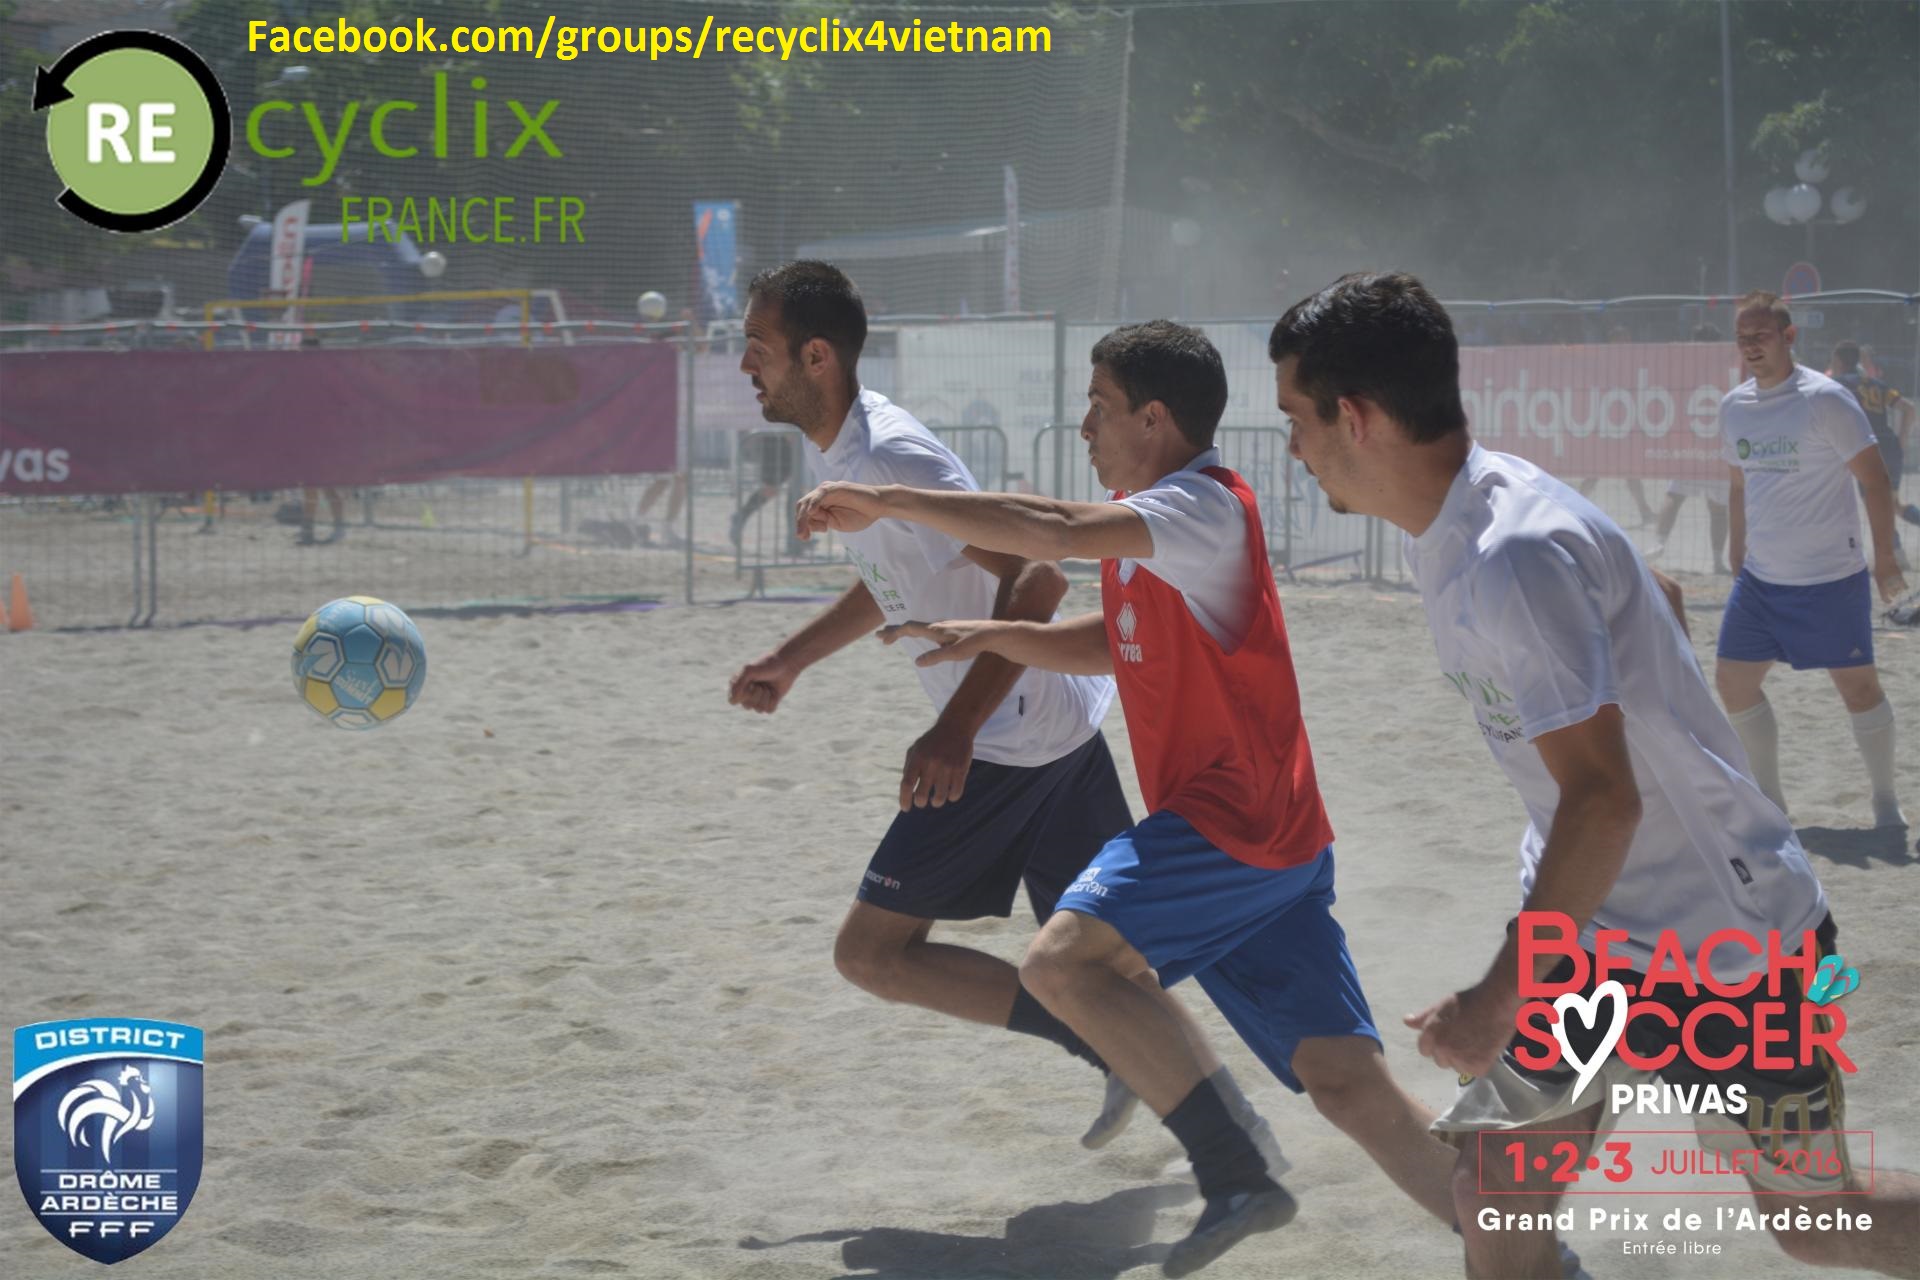 recyclix-beach-soccer-privas-15.jpg